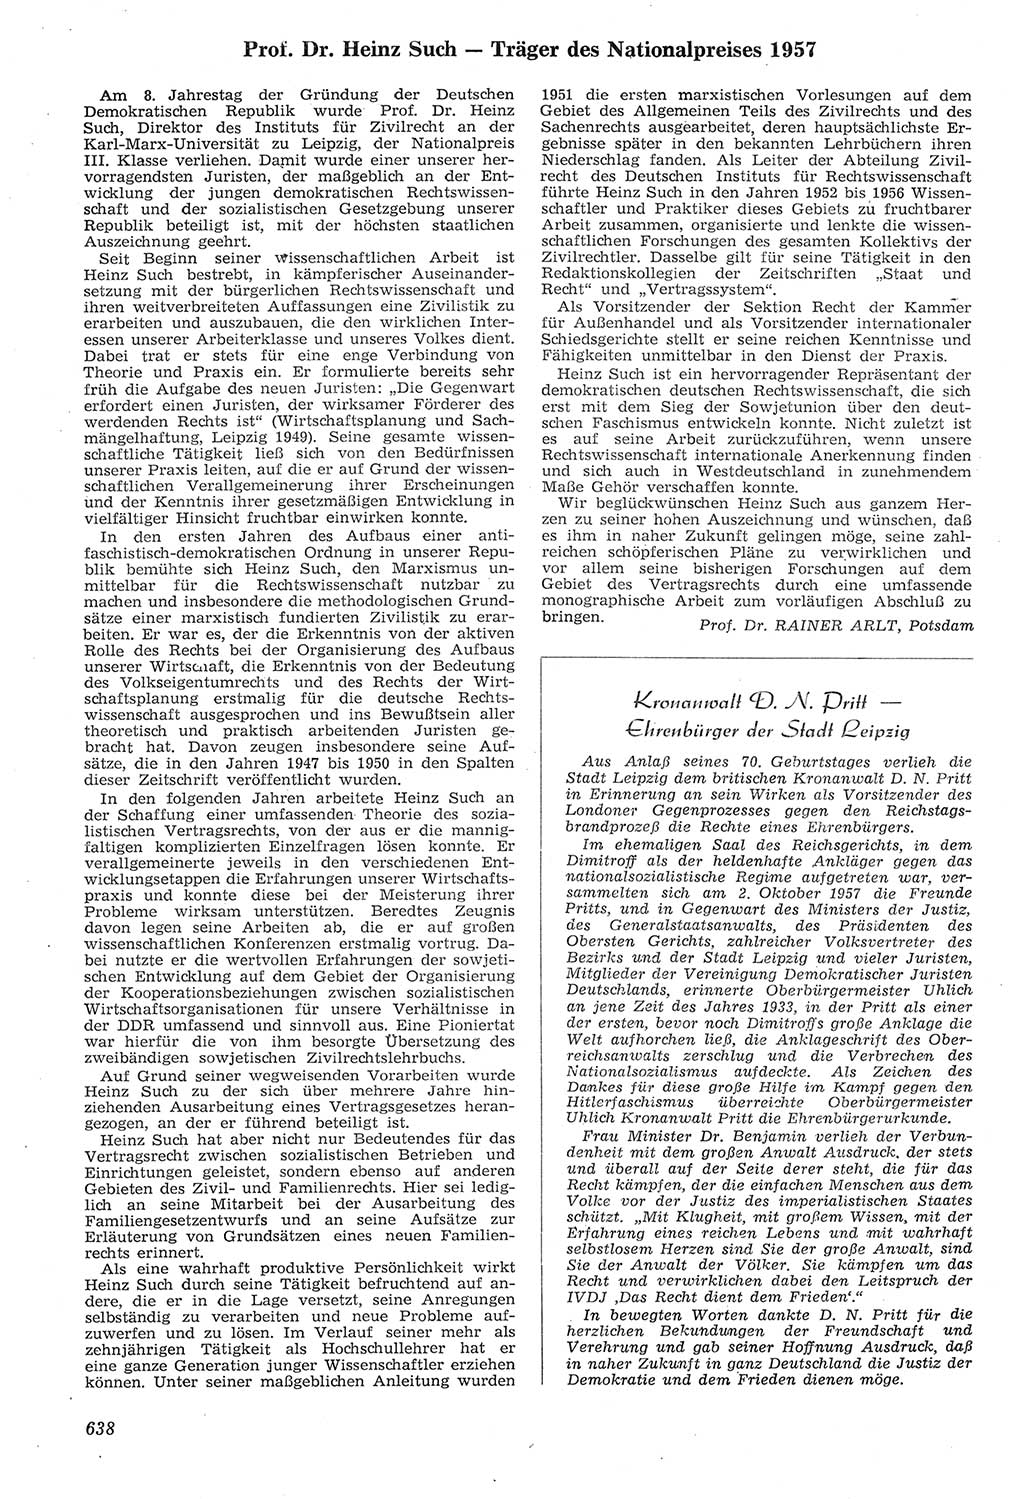 Neue Justiz (NJ), Zeitschrift für Recht und Rechtswissenschaft [Deutsche Demokratische Republik (DDR)], 11. Jahrgang 1957, Seite 638 (NJ DDR 1957, S. 638)